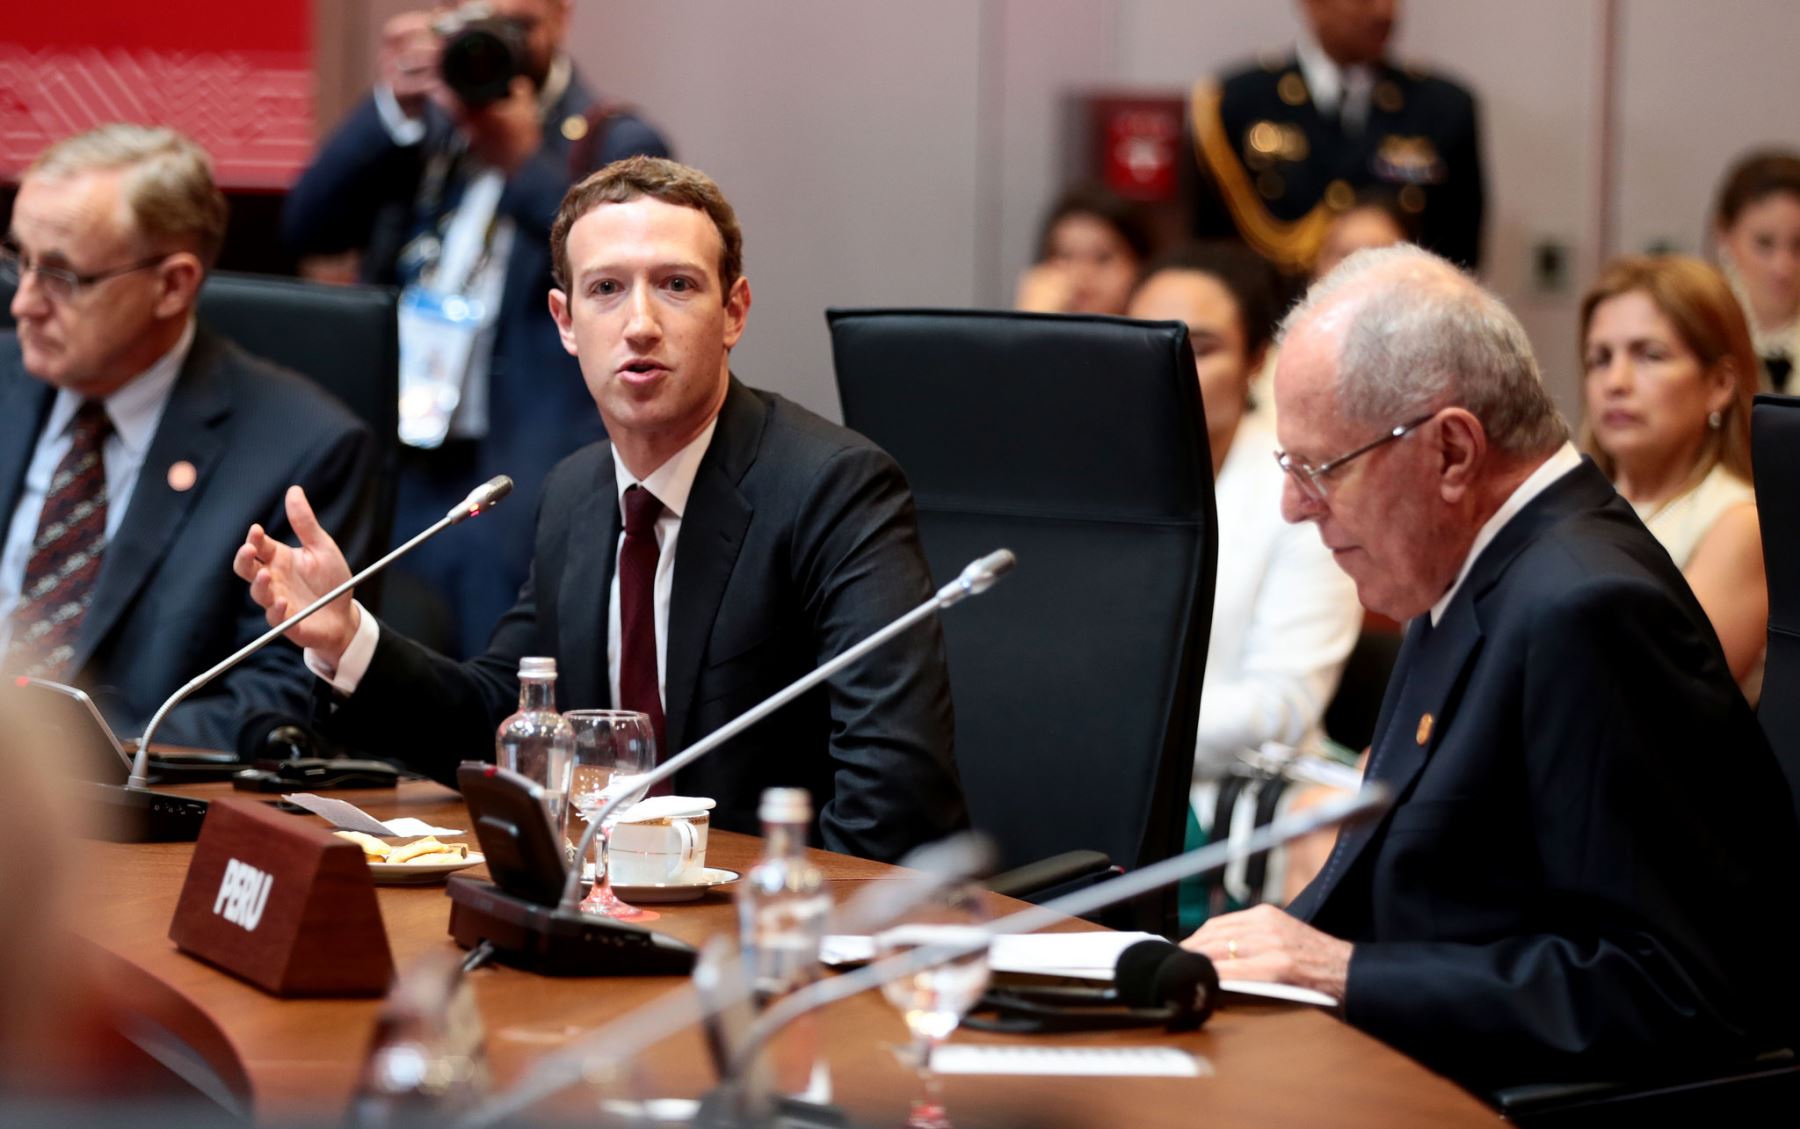 El presidente Pedro Pablo Kuczynski participó en el encuentro del fundador de Facebook, Mark Zuckerberg, con los líderes de APEC.